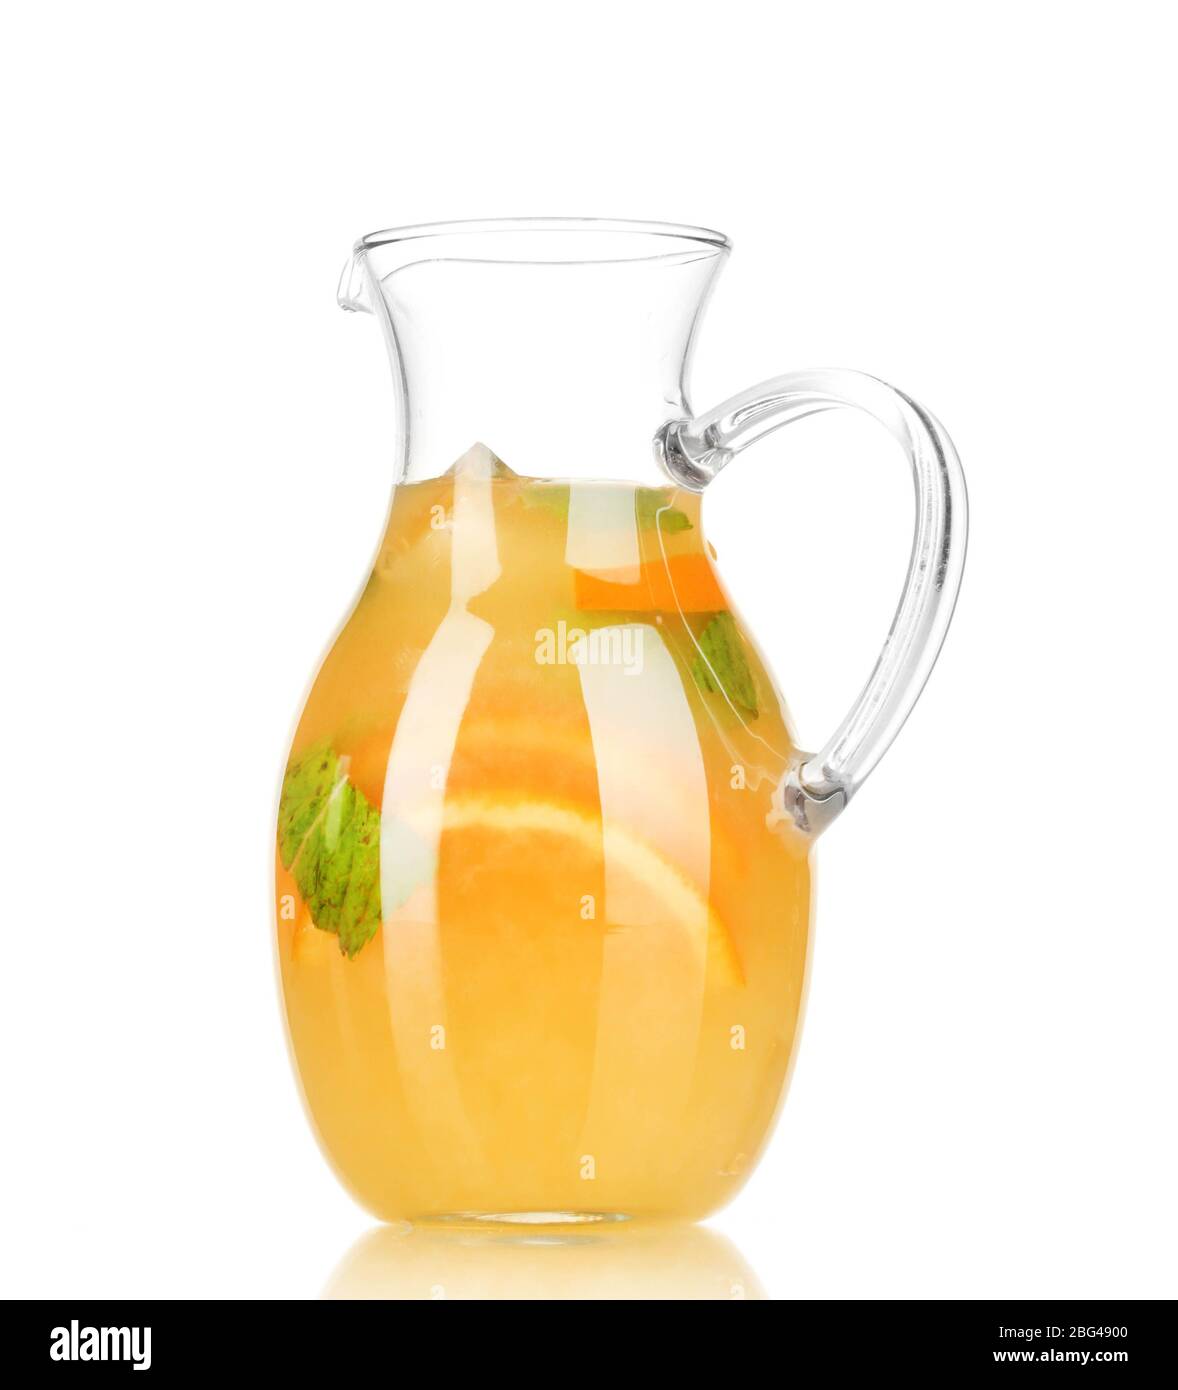 https://c8.alamy.com/comp/2BG4900/orange-lemonade-in-pitcher-isolated-on-white-2BG4900.jpg